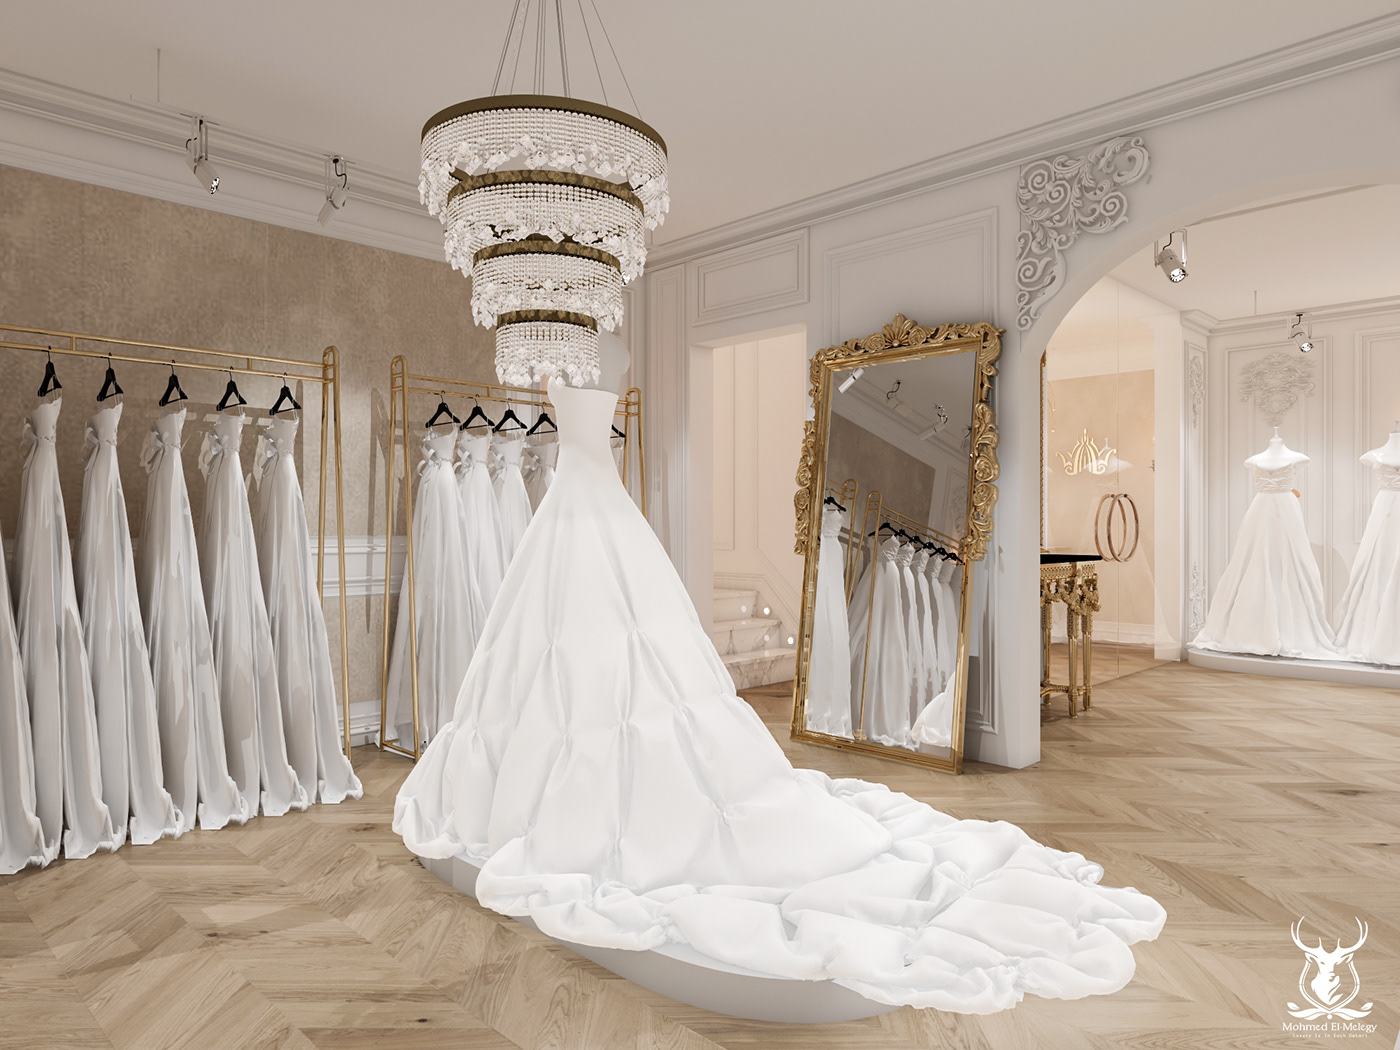 wedding interiordesign architecture visualization modern 3ds max Render exterior interior design  Wedding dress design